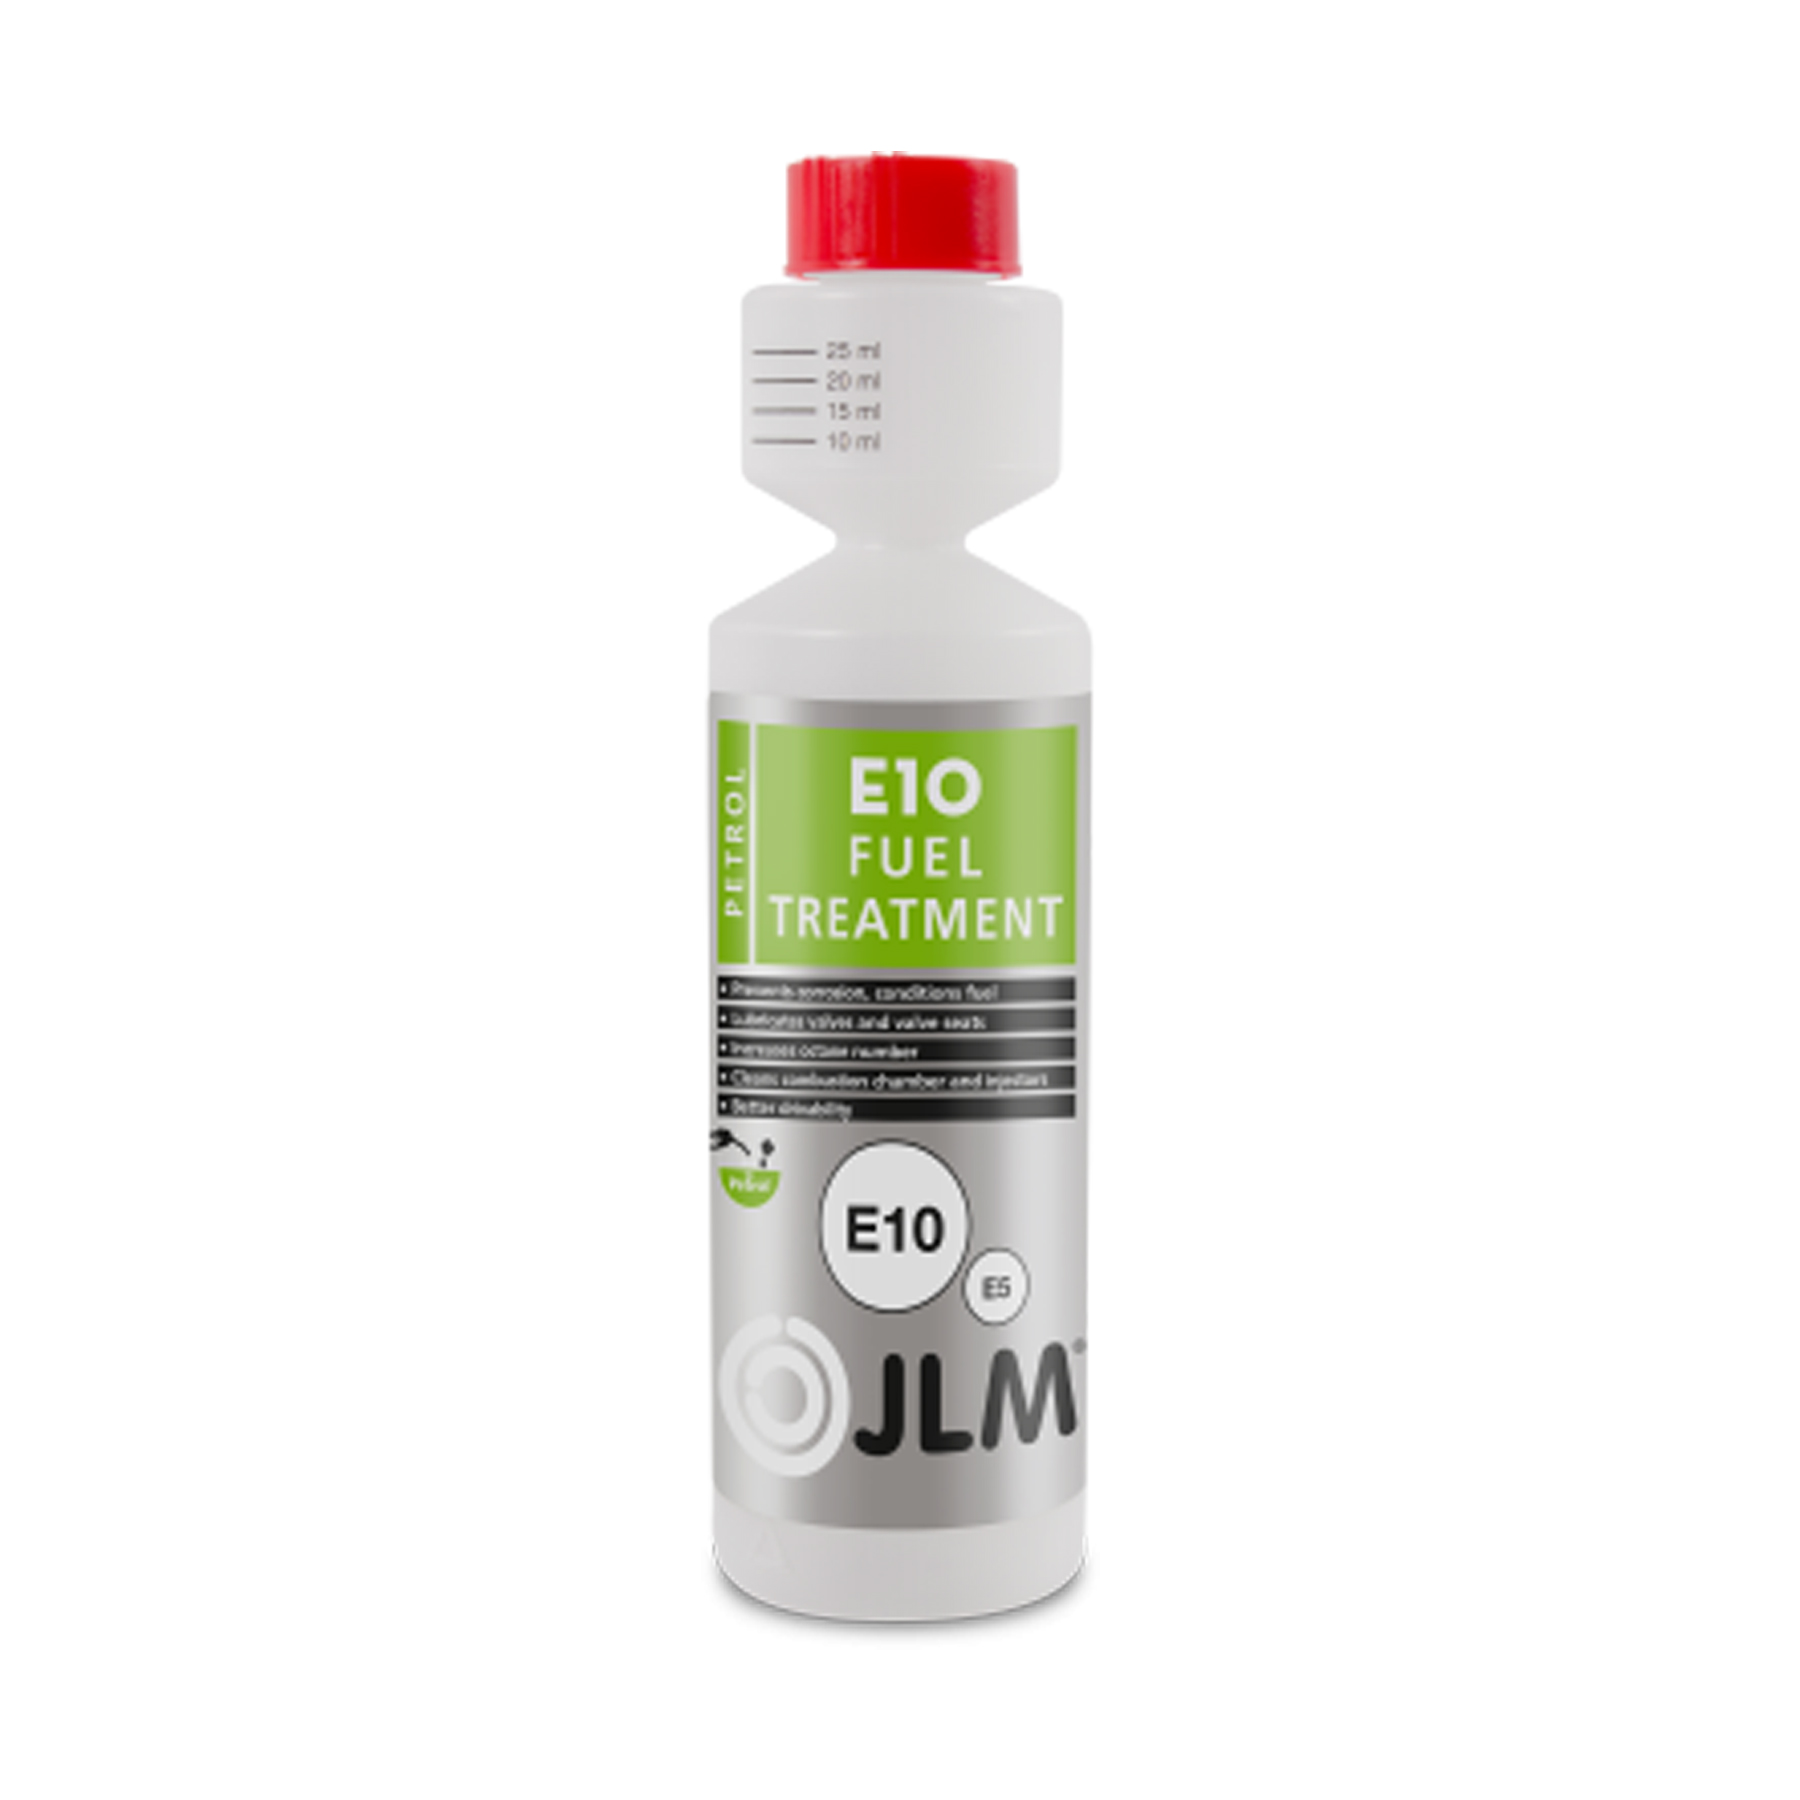 JLM Petrol E10 Fuel Treatment 250ml